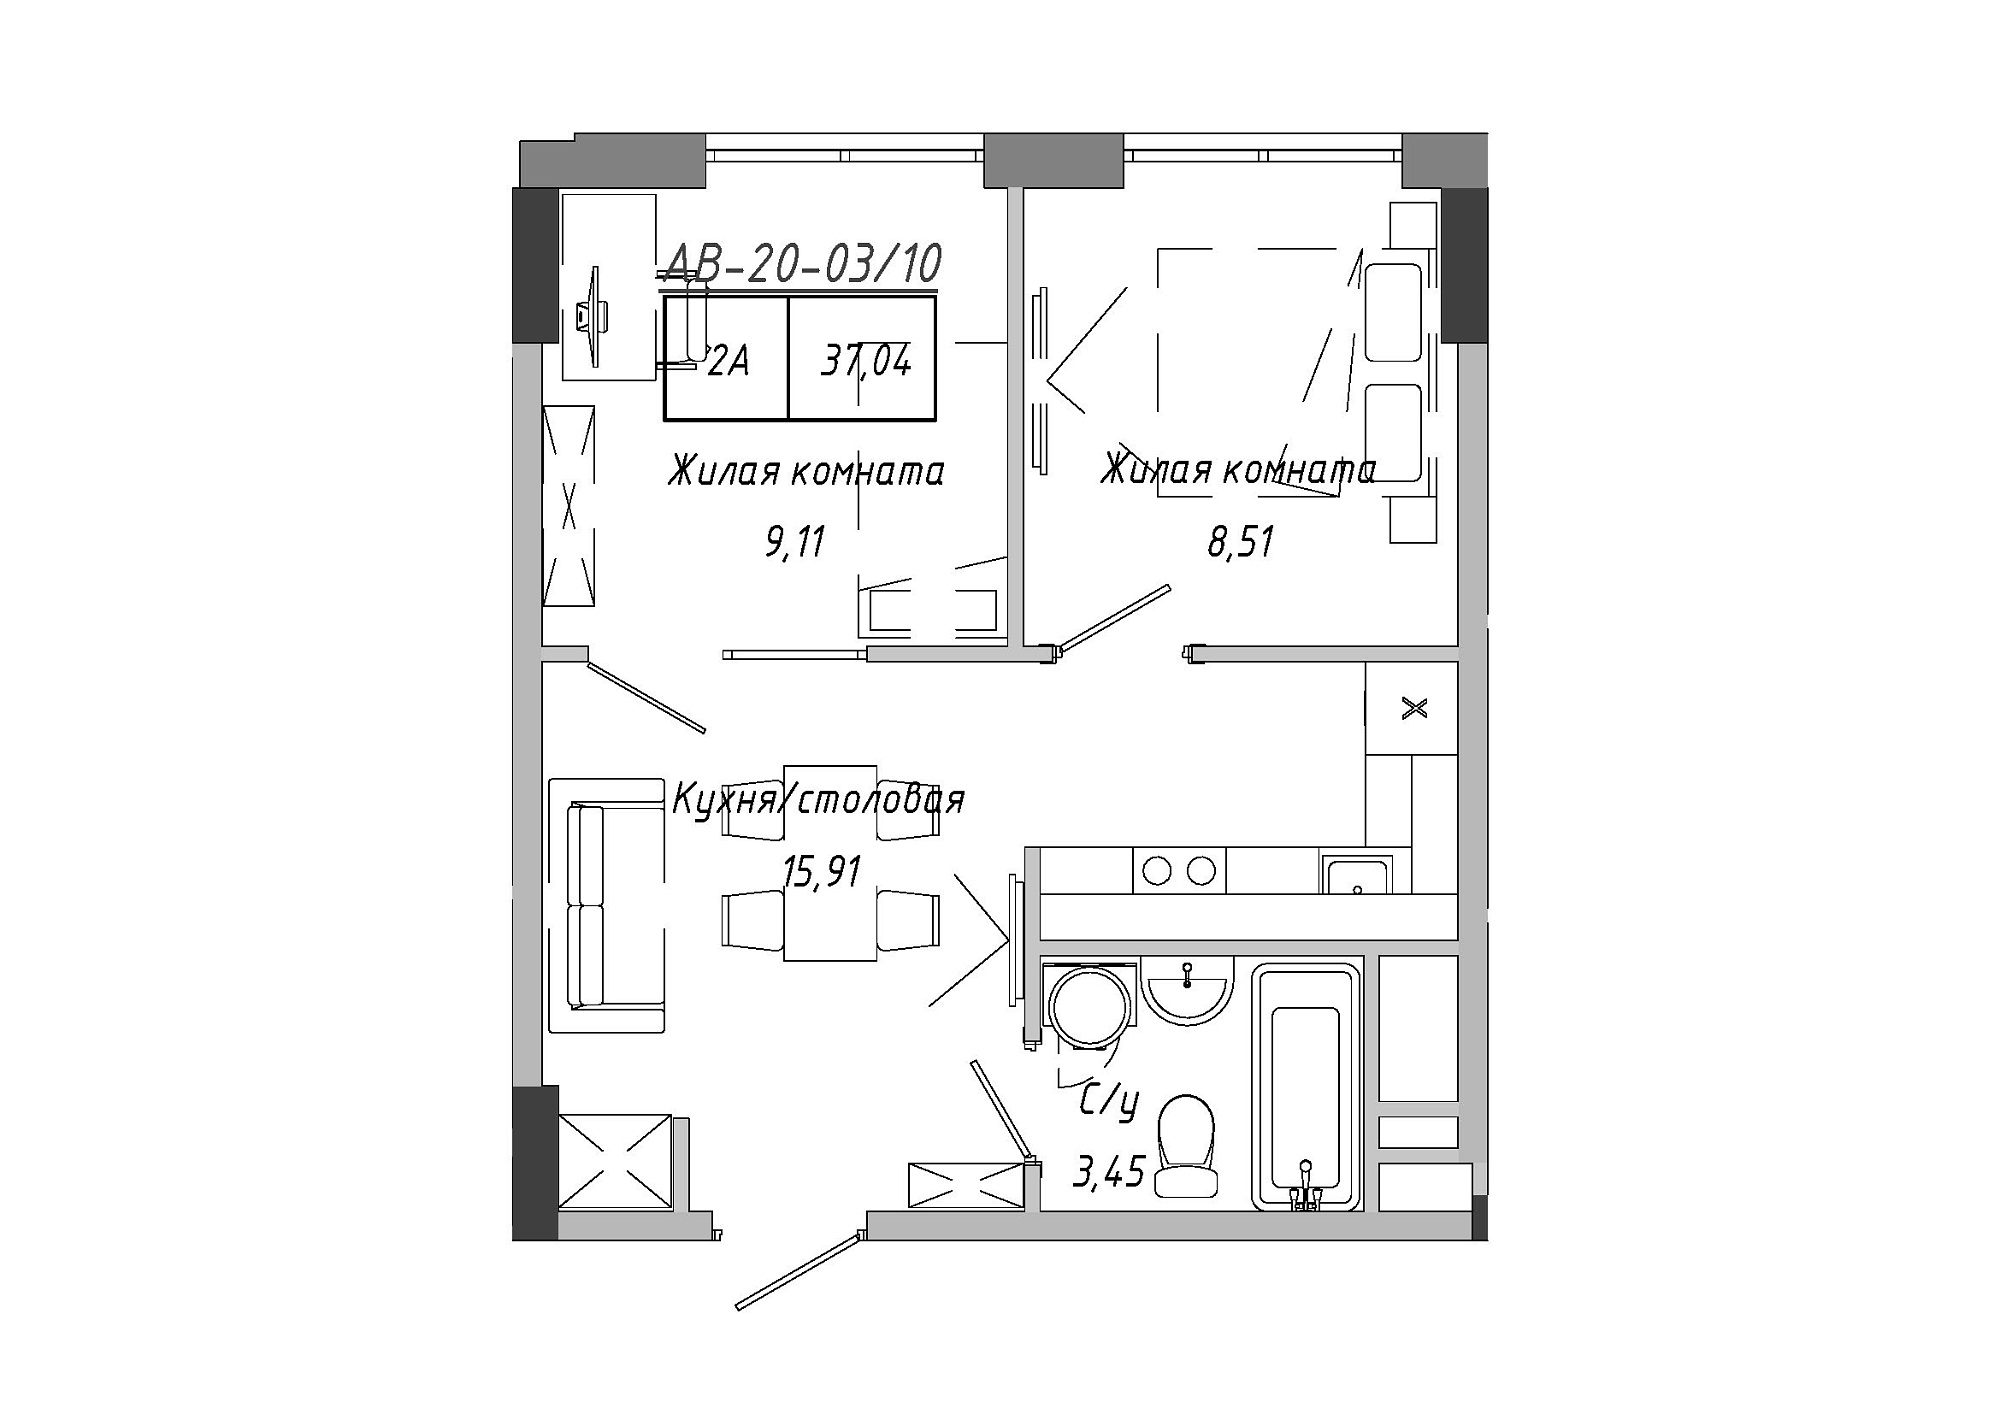 Планування 2-к квартира площею 37.04м2, AB-20-03/00010.